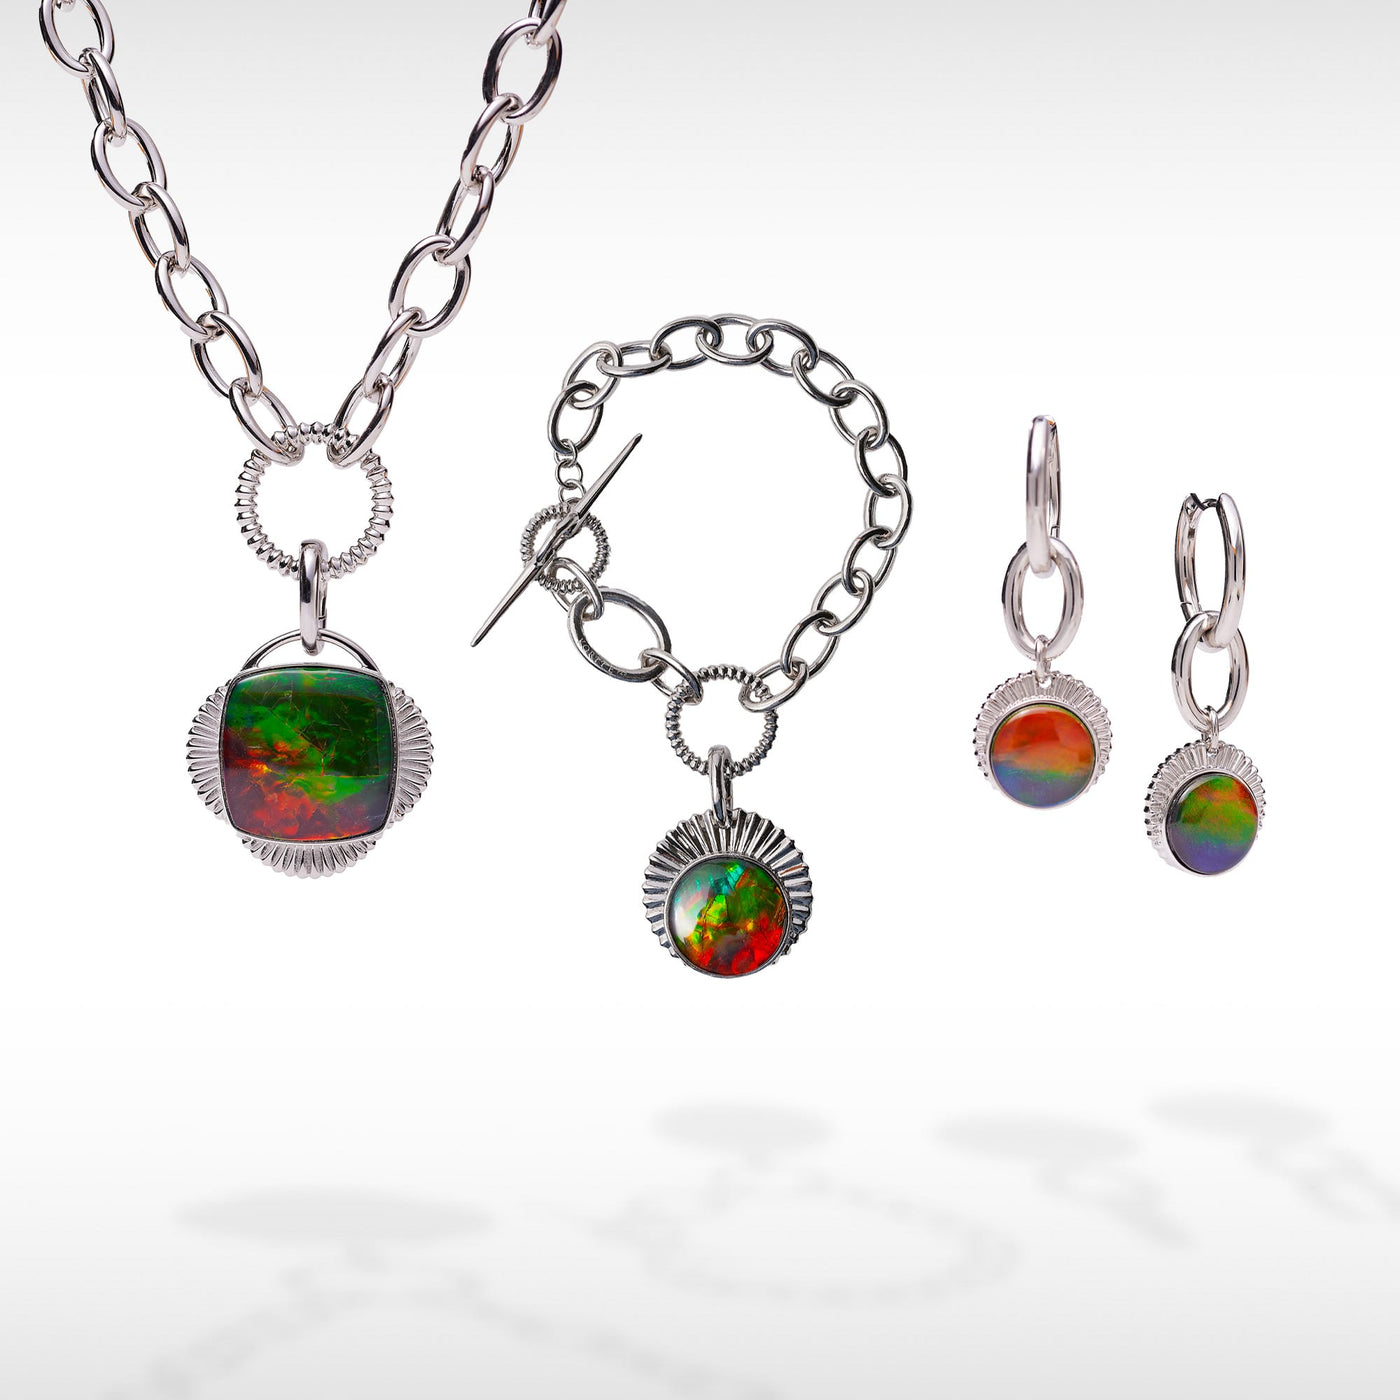 Origins chain link ammolite pendant,earring and bracelet set in sterli ...